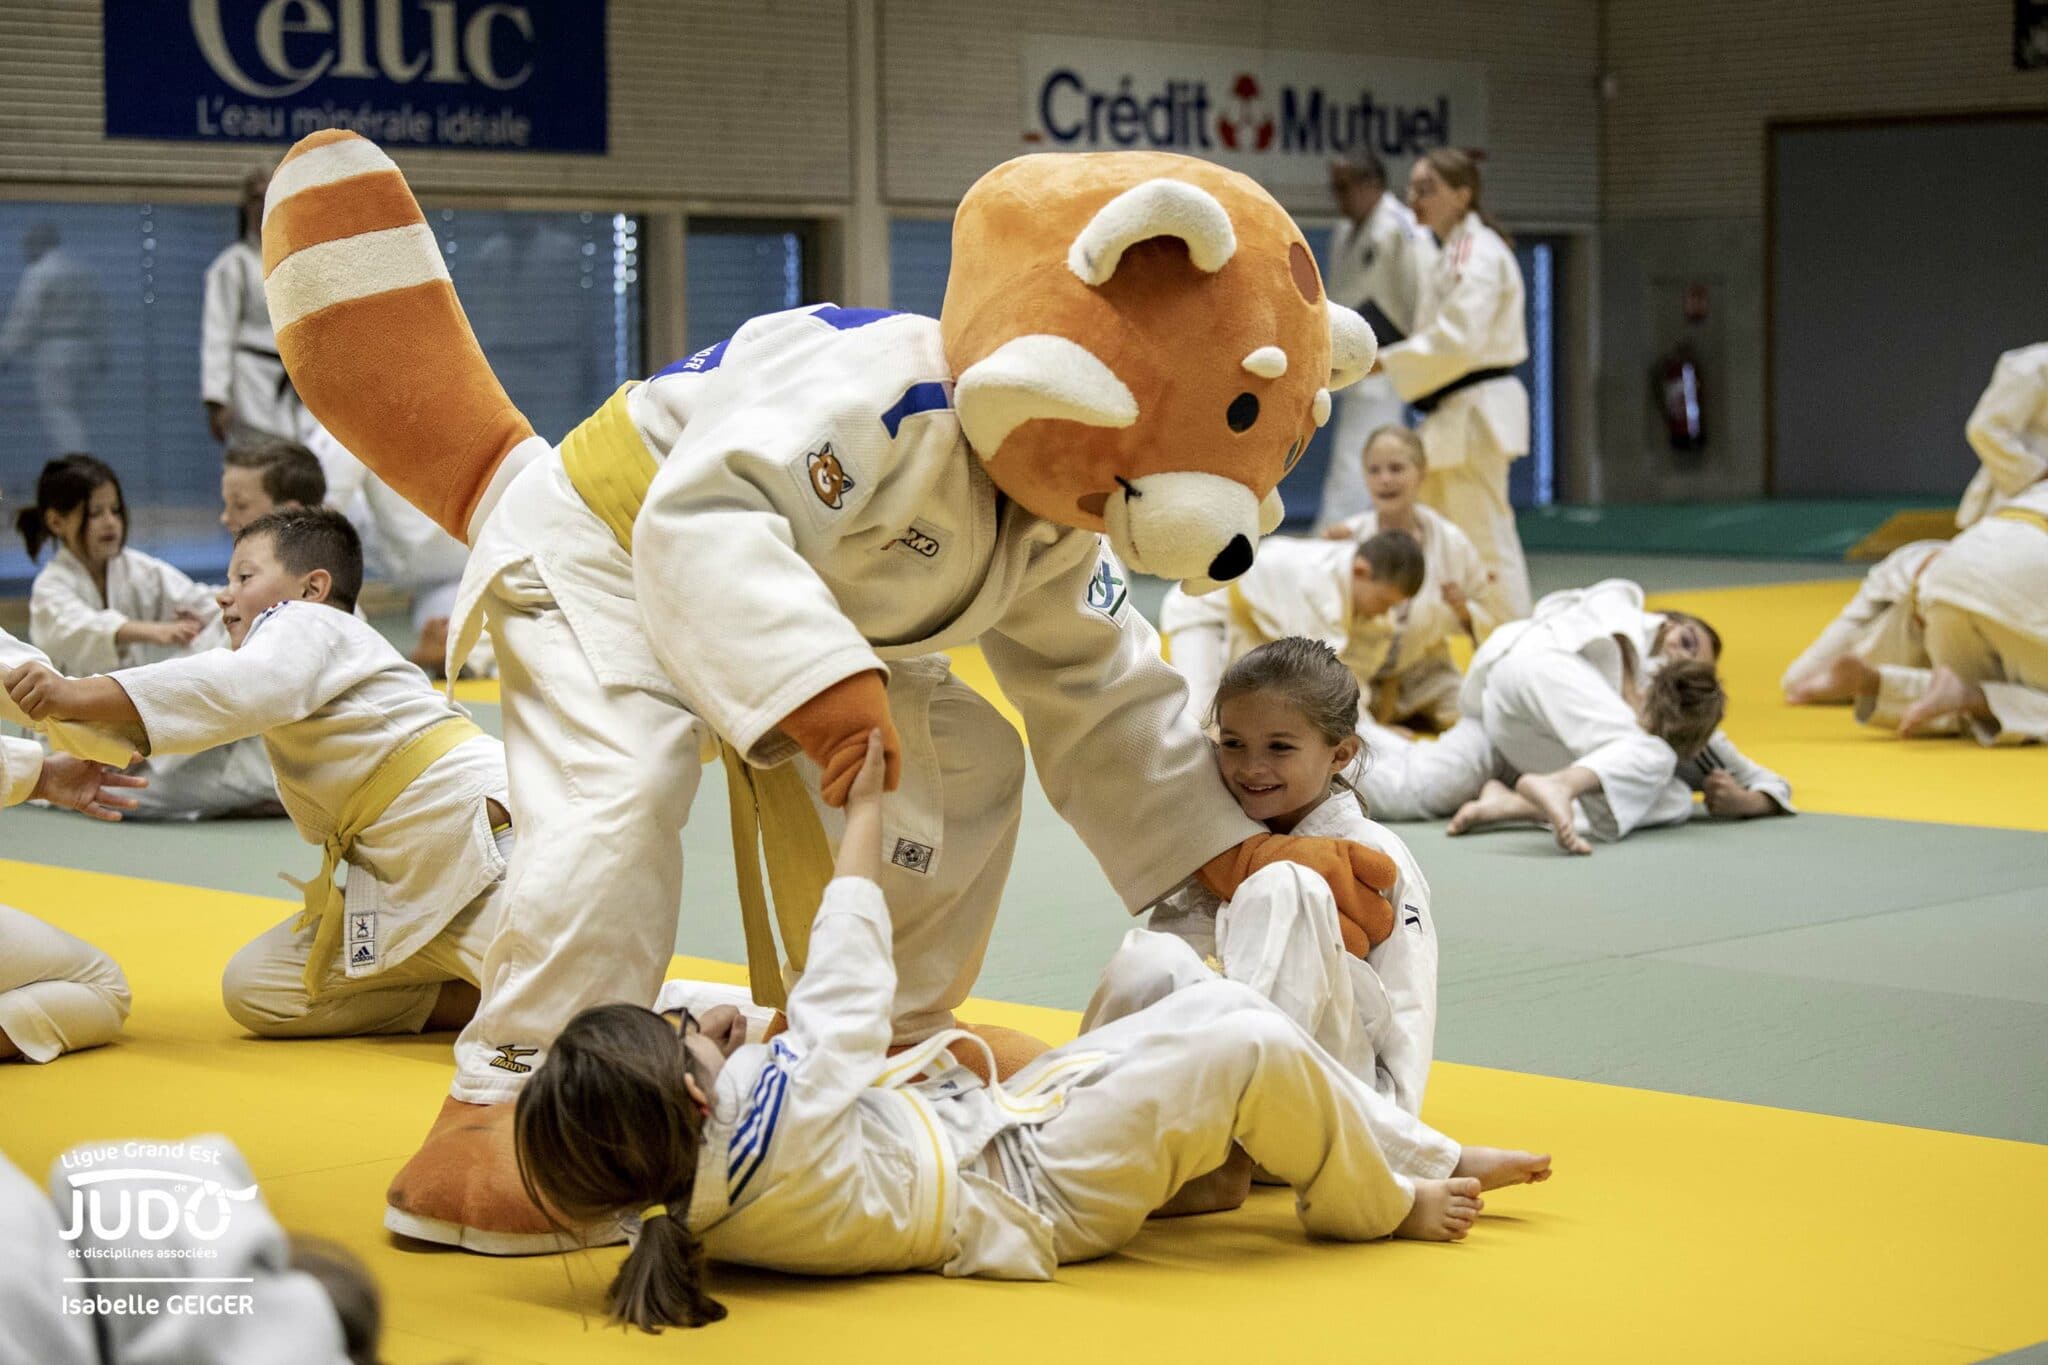 La mascotte des JO en judoka - Metz Judo